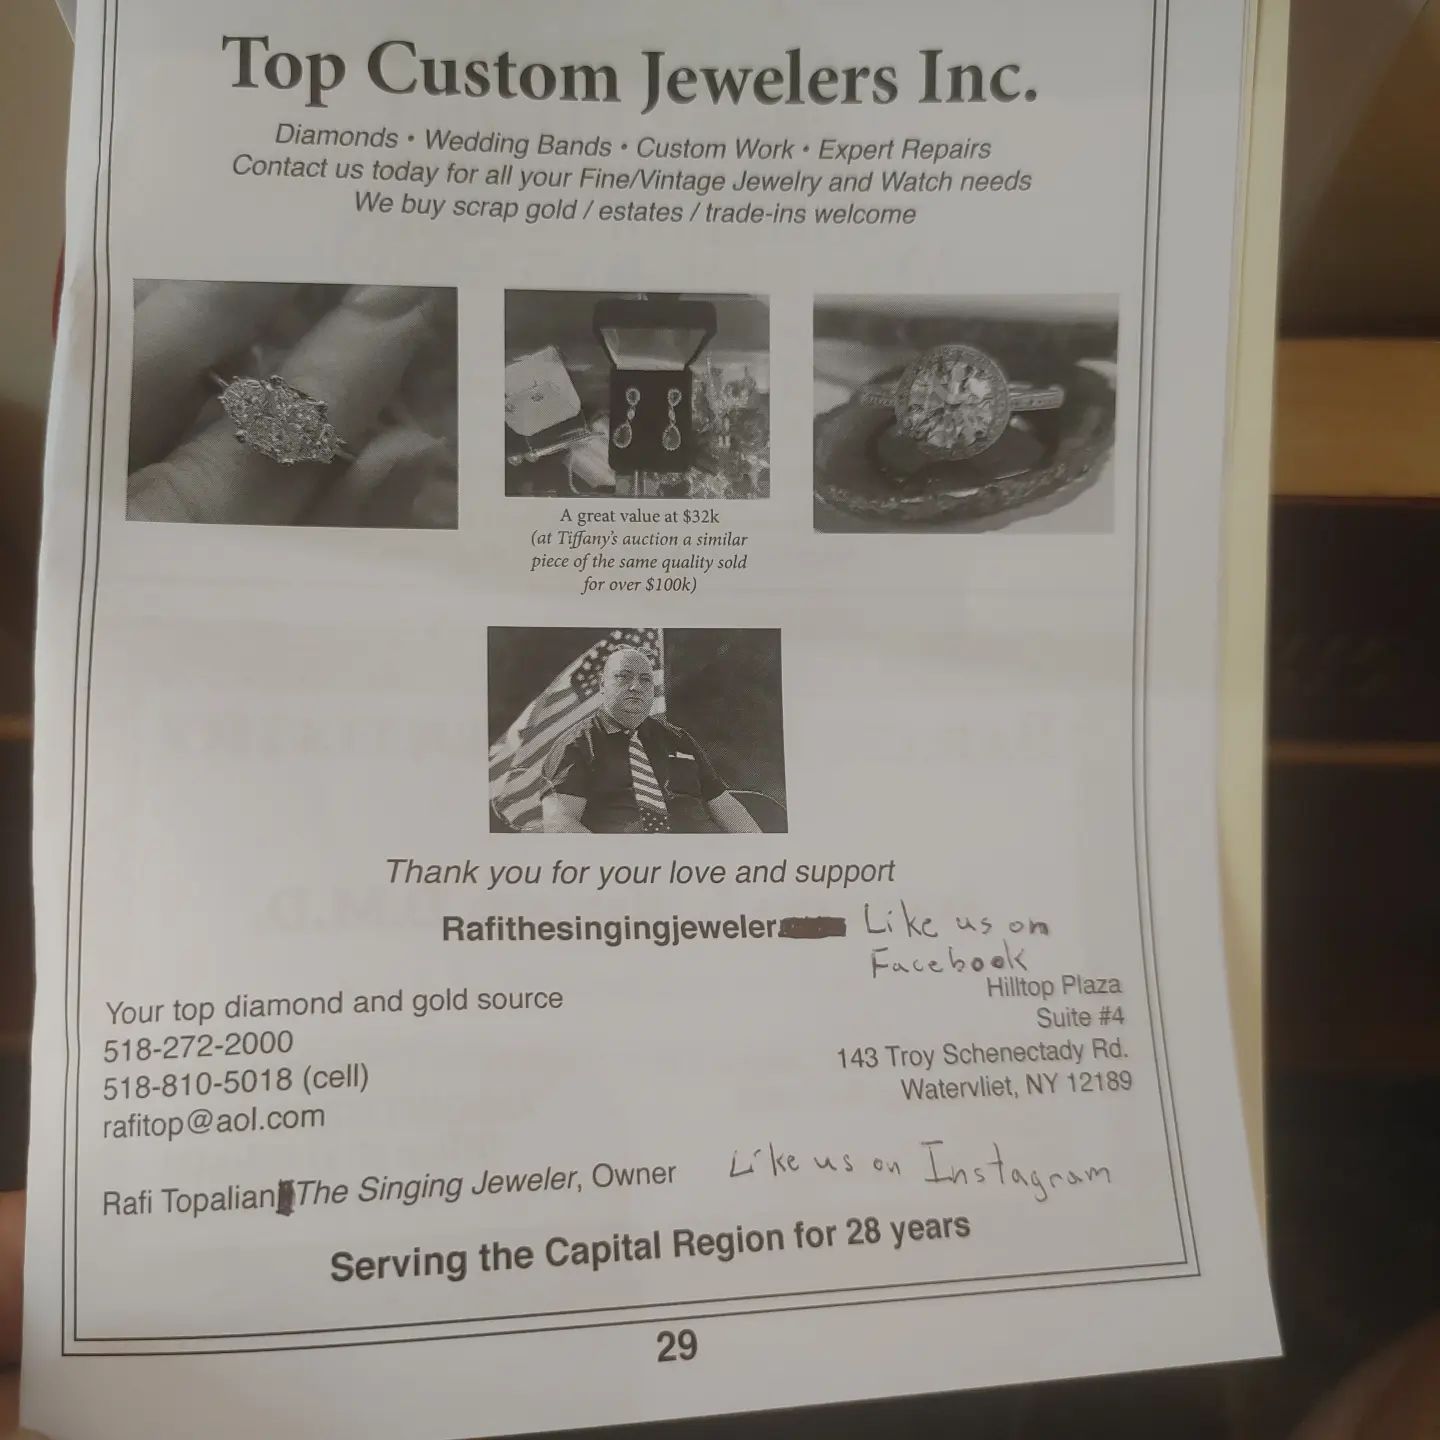 Top Custom Jewelers